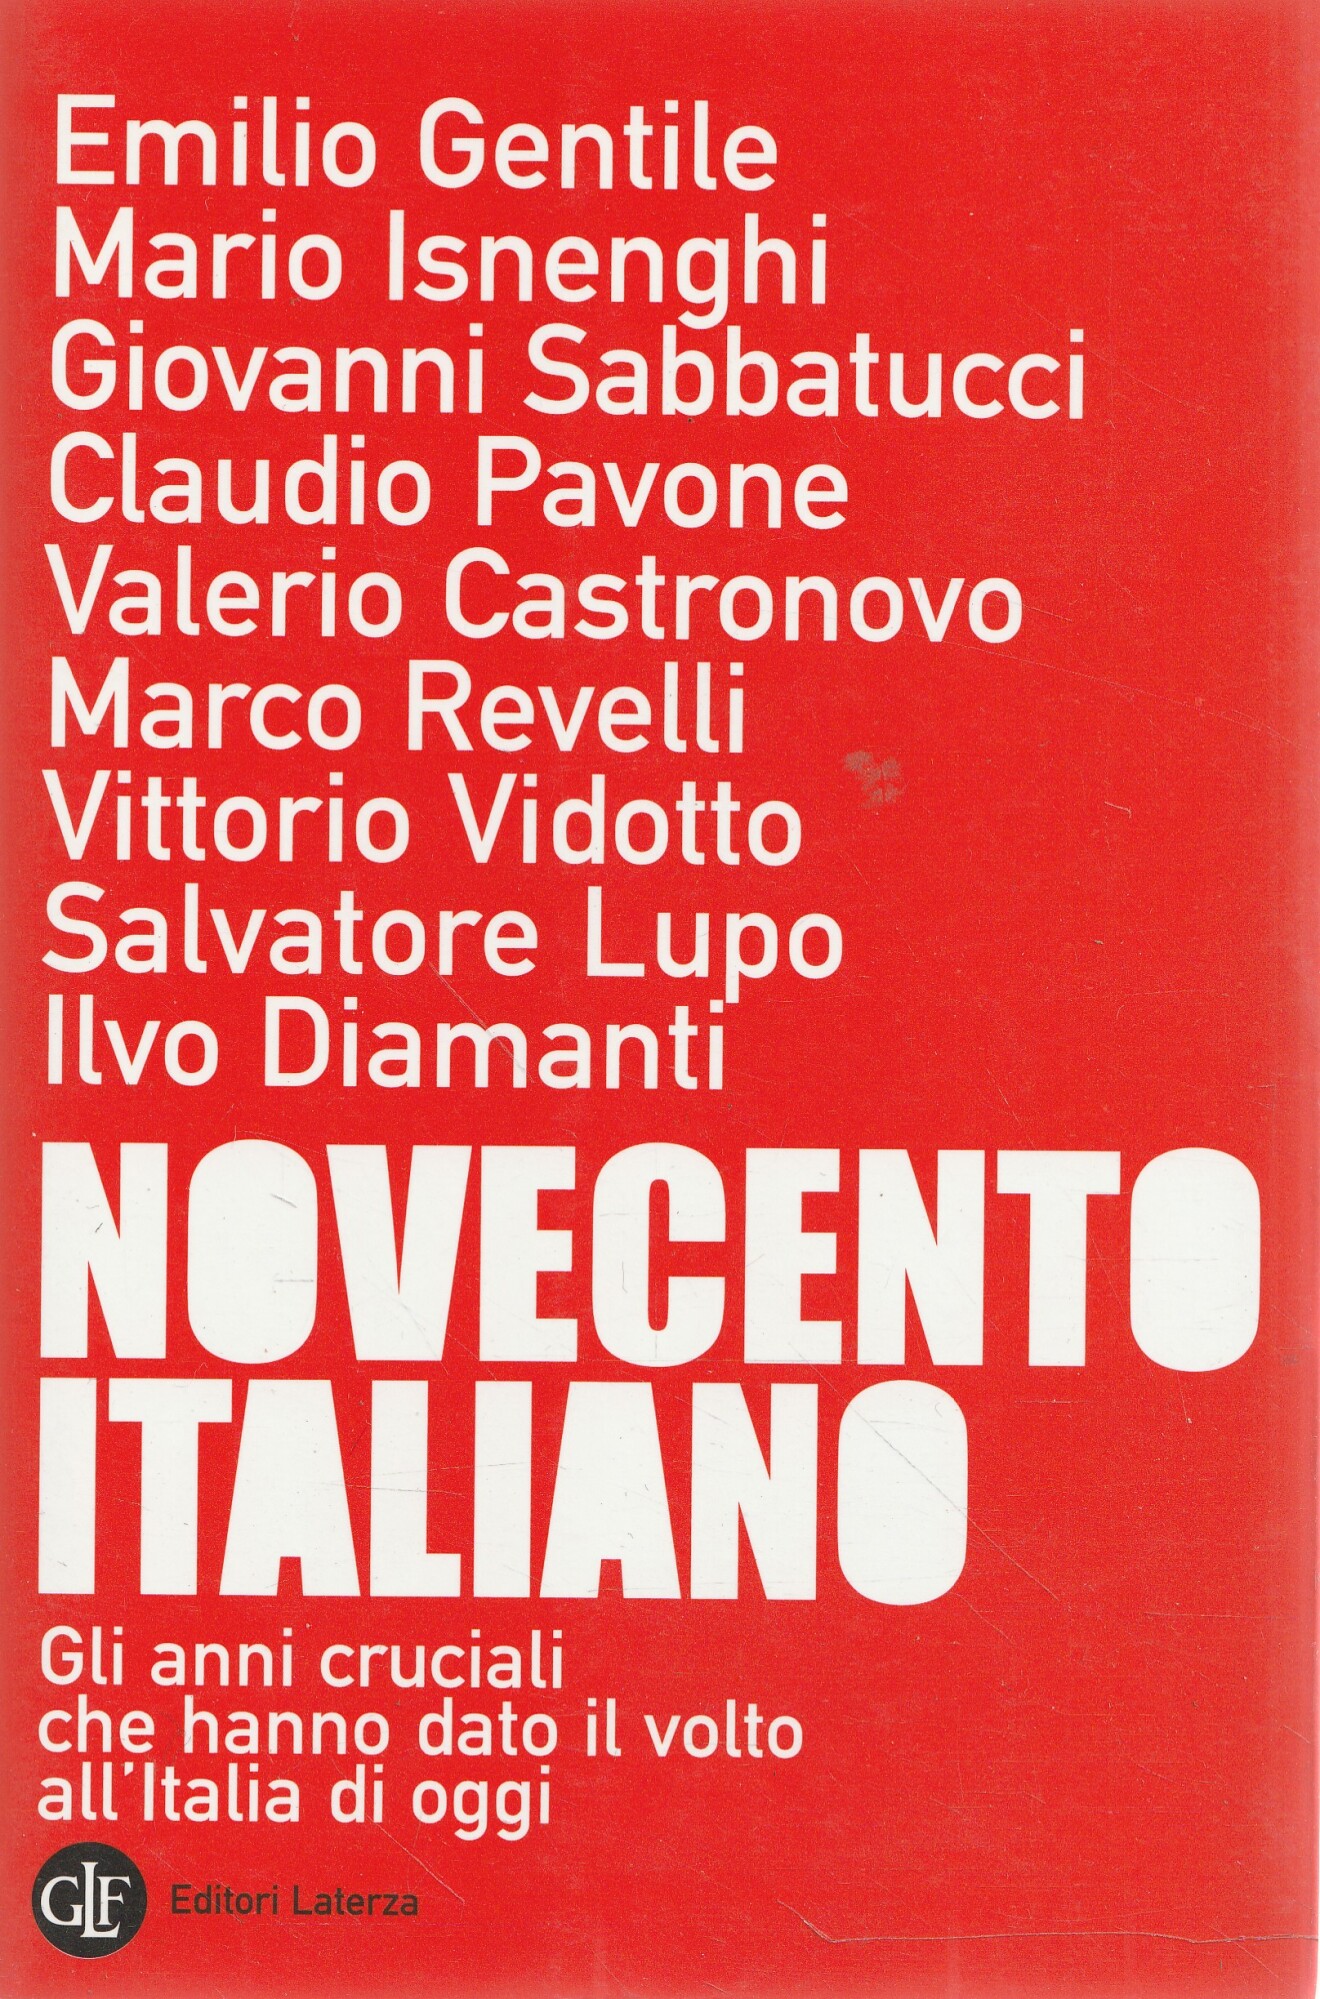 Novecento Italiano - E. Gentile-M.Isnenghi-G. Sabbatucci-C. Pavone-V. Castronovo-M. Revelli-V. Vidotto-S. Lupo-I. Diamanti